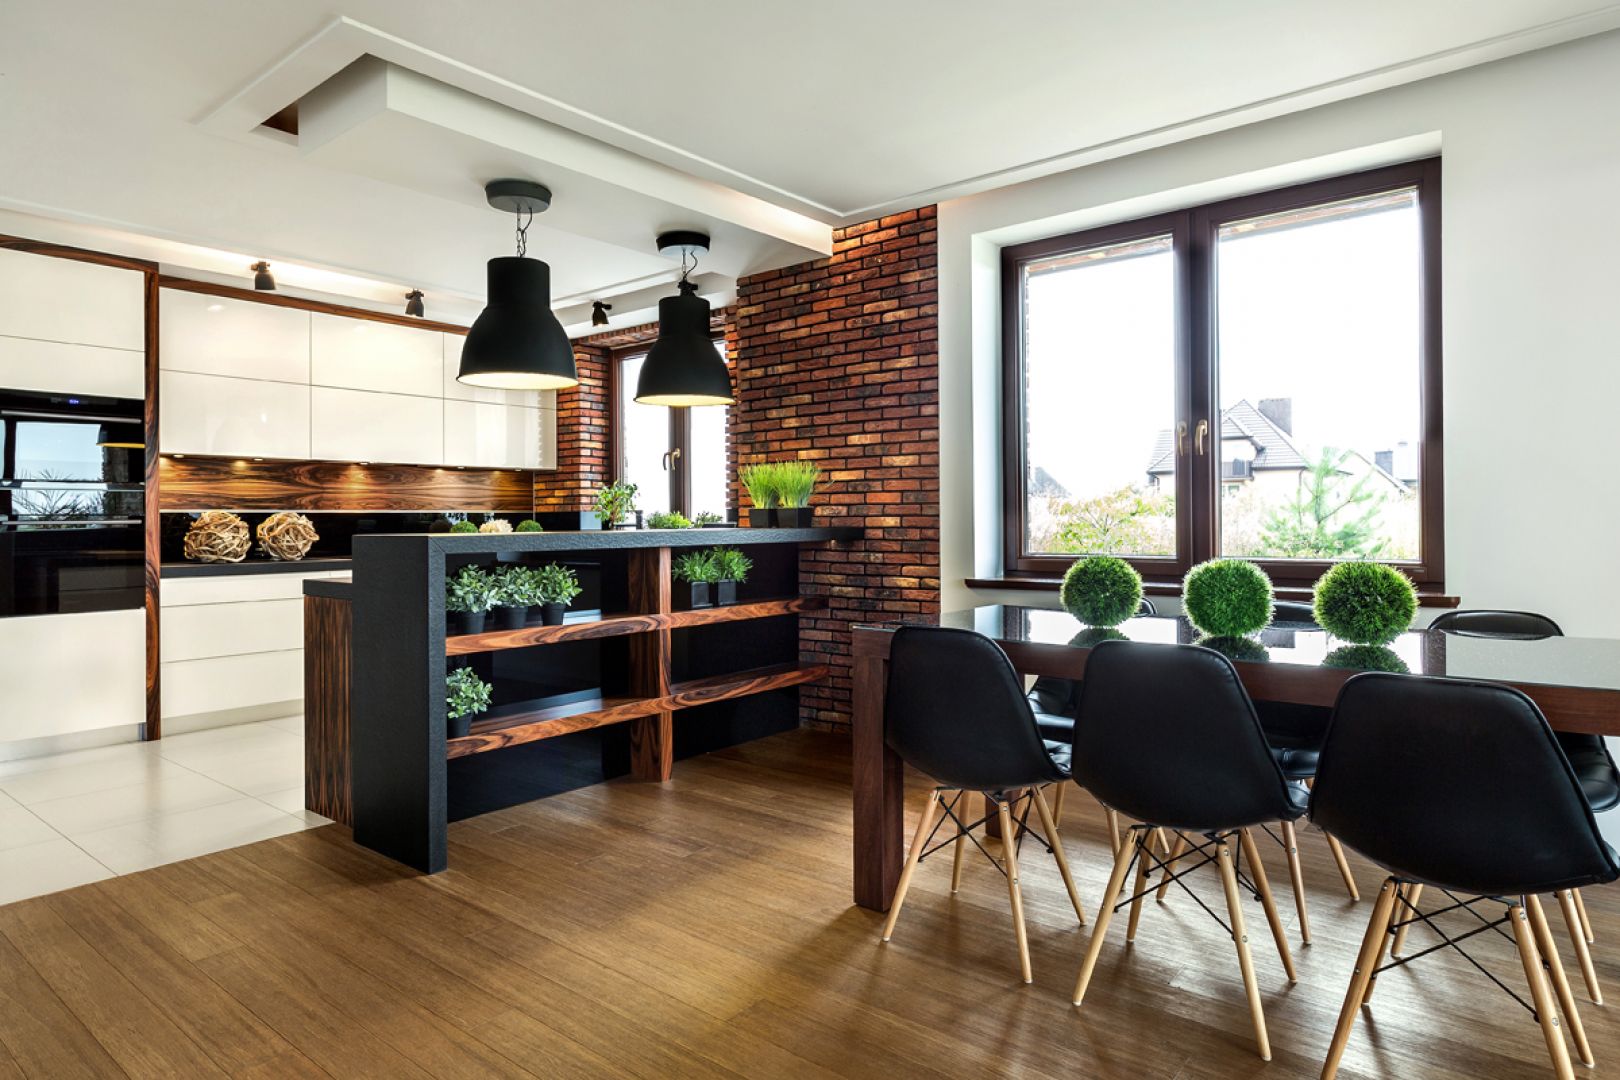 Otwarte na salon kuchnie z wysokim barem naturalnie dają przestrzeń do ustawienia przed nimi stołu z krzesłami. Fot. Pracownia VIGO/Max Kuchnie